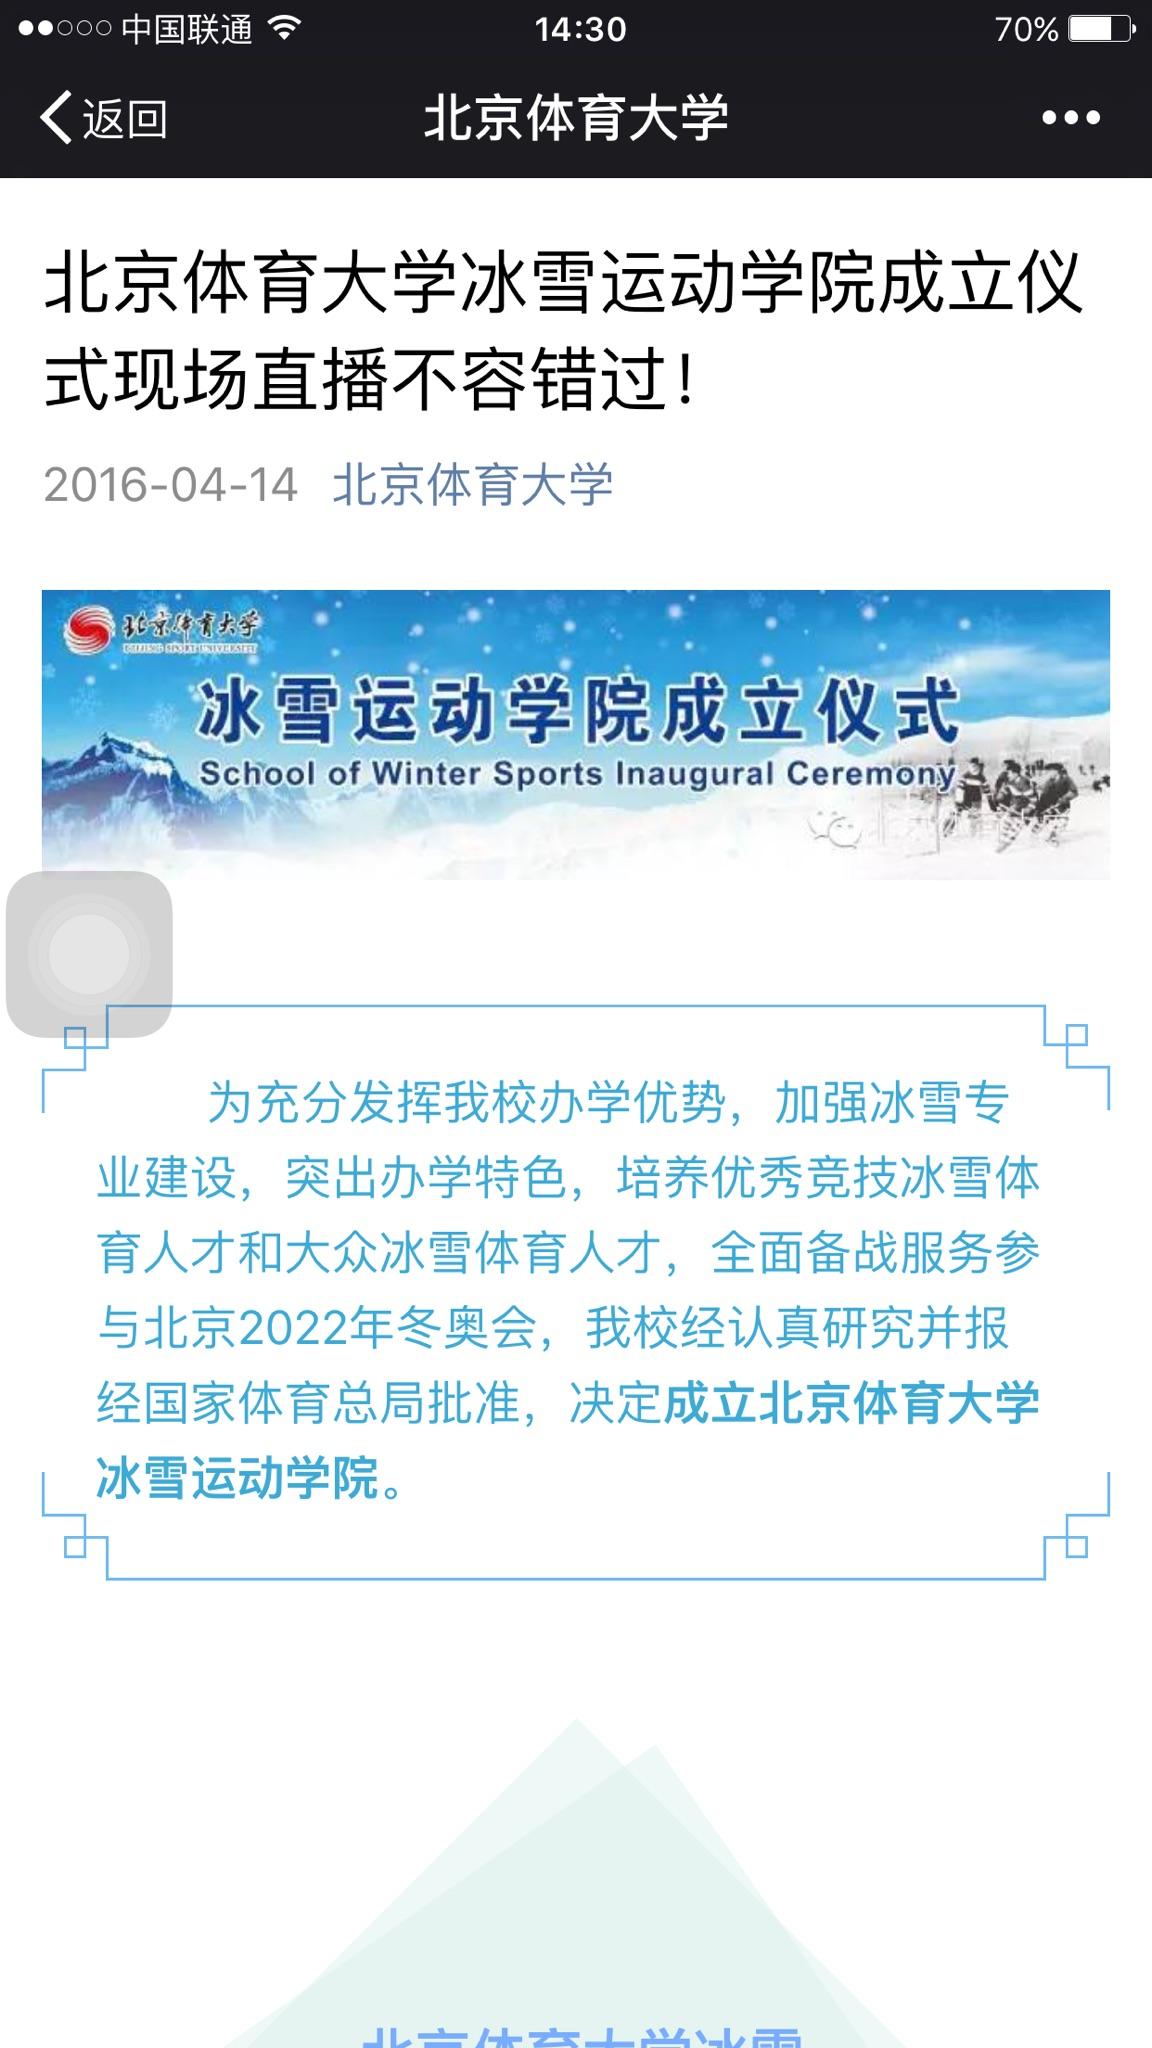 如何看待北京体育大学成立冰雪运动学院? - 20